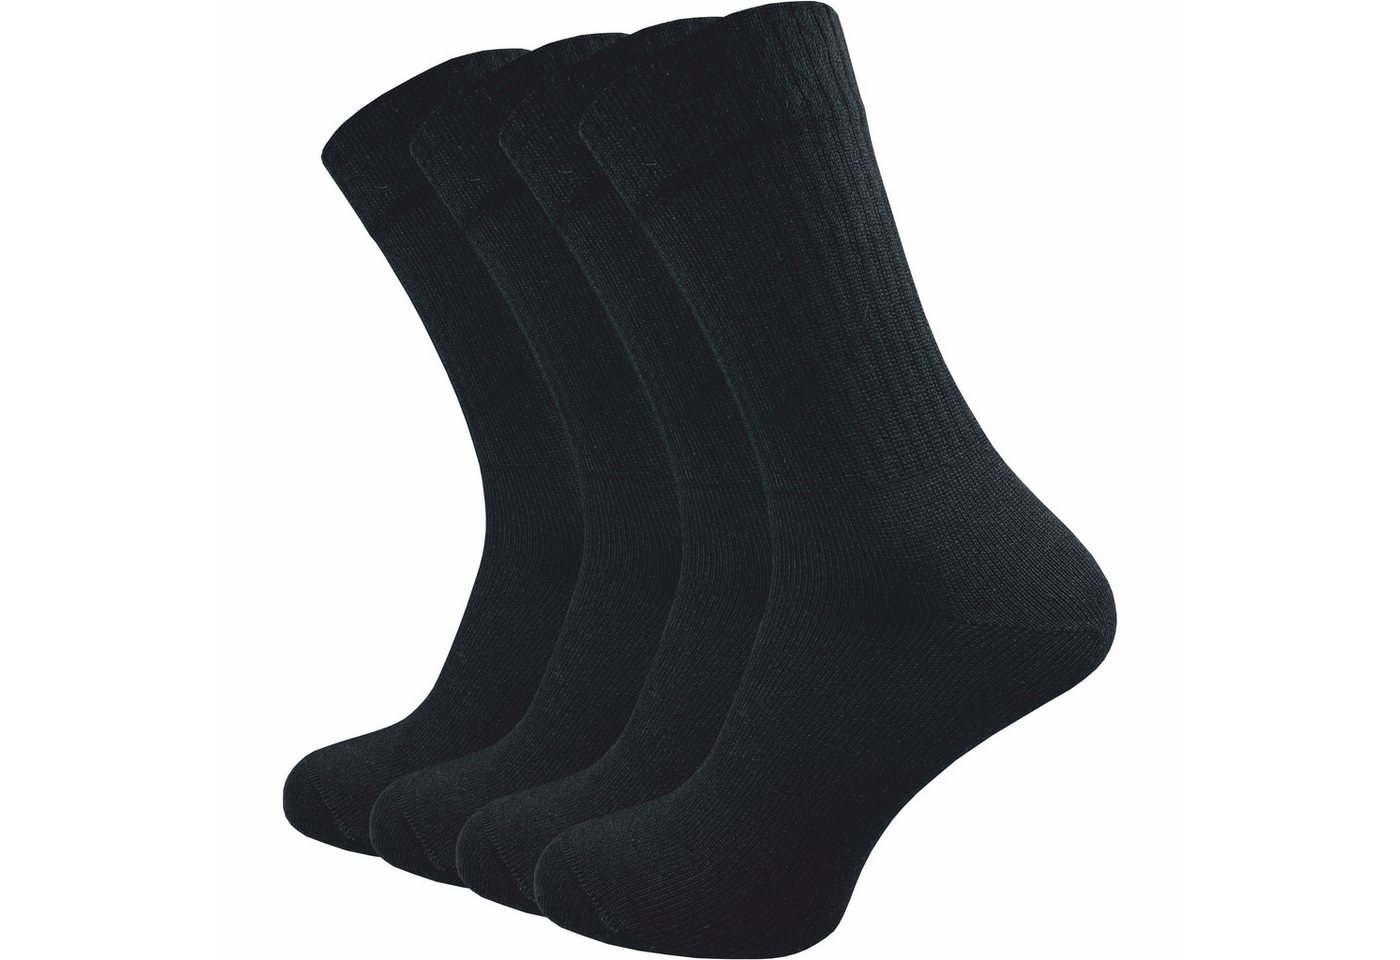 GAWILO Tennissocken für Herren mit Retro Streifen - sehr hochwertig (4 Paar) Retro Socken mit verstärkter Ferse und Spitze - made in Europe von GAWILO